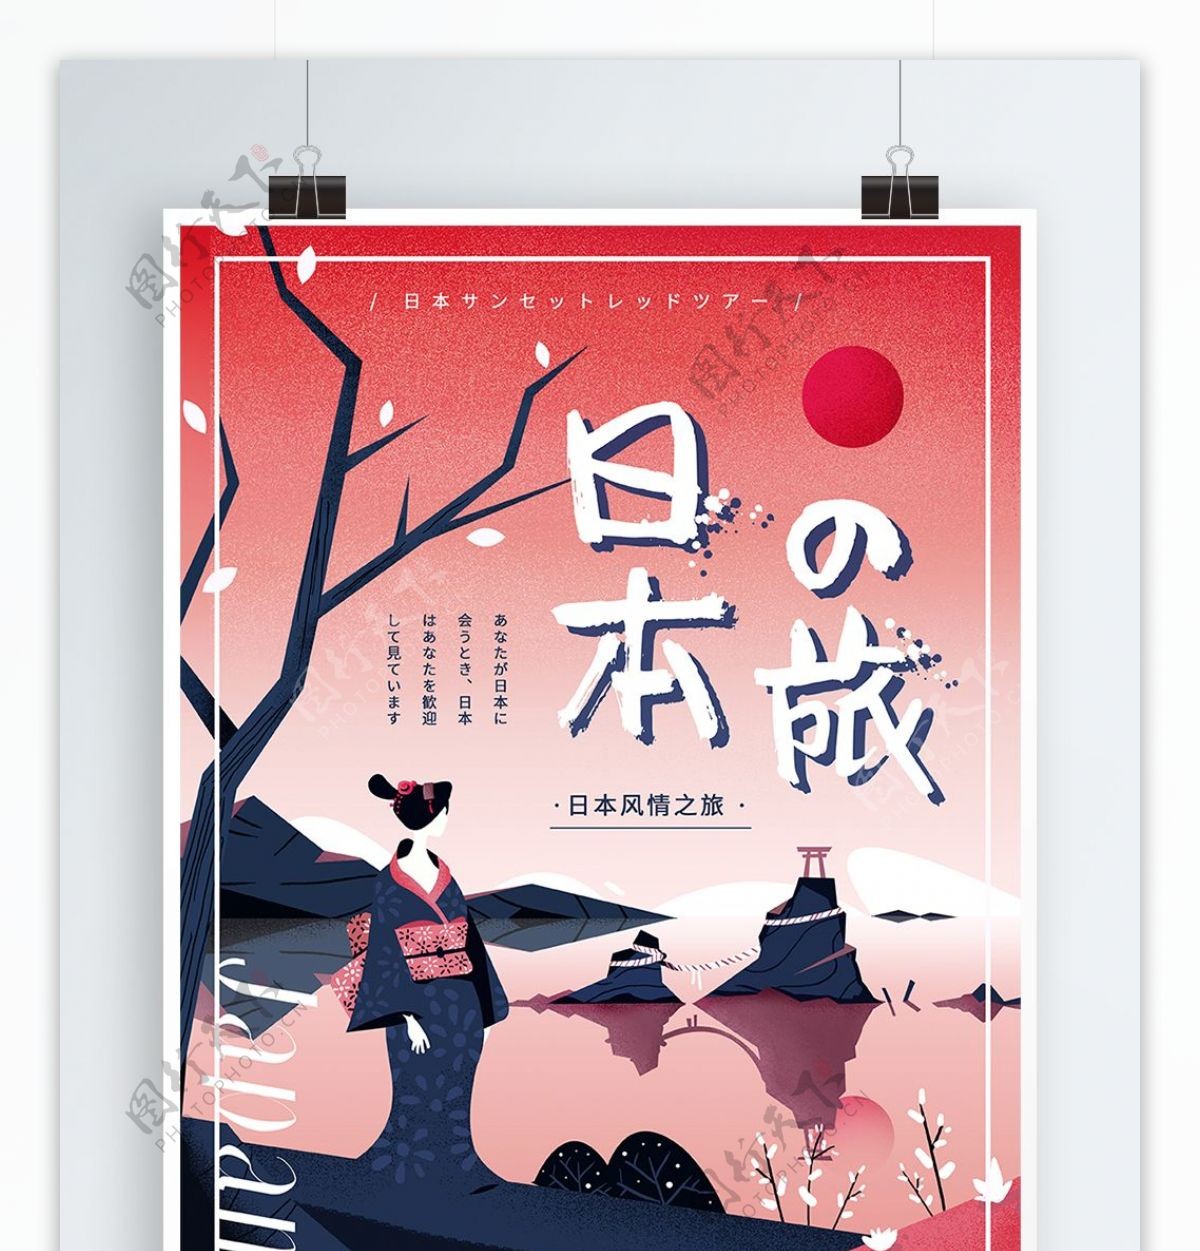 原创手绘扁平风格日本旅游宣传海报